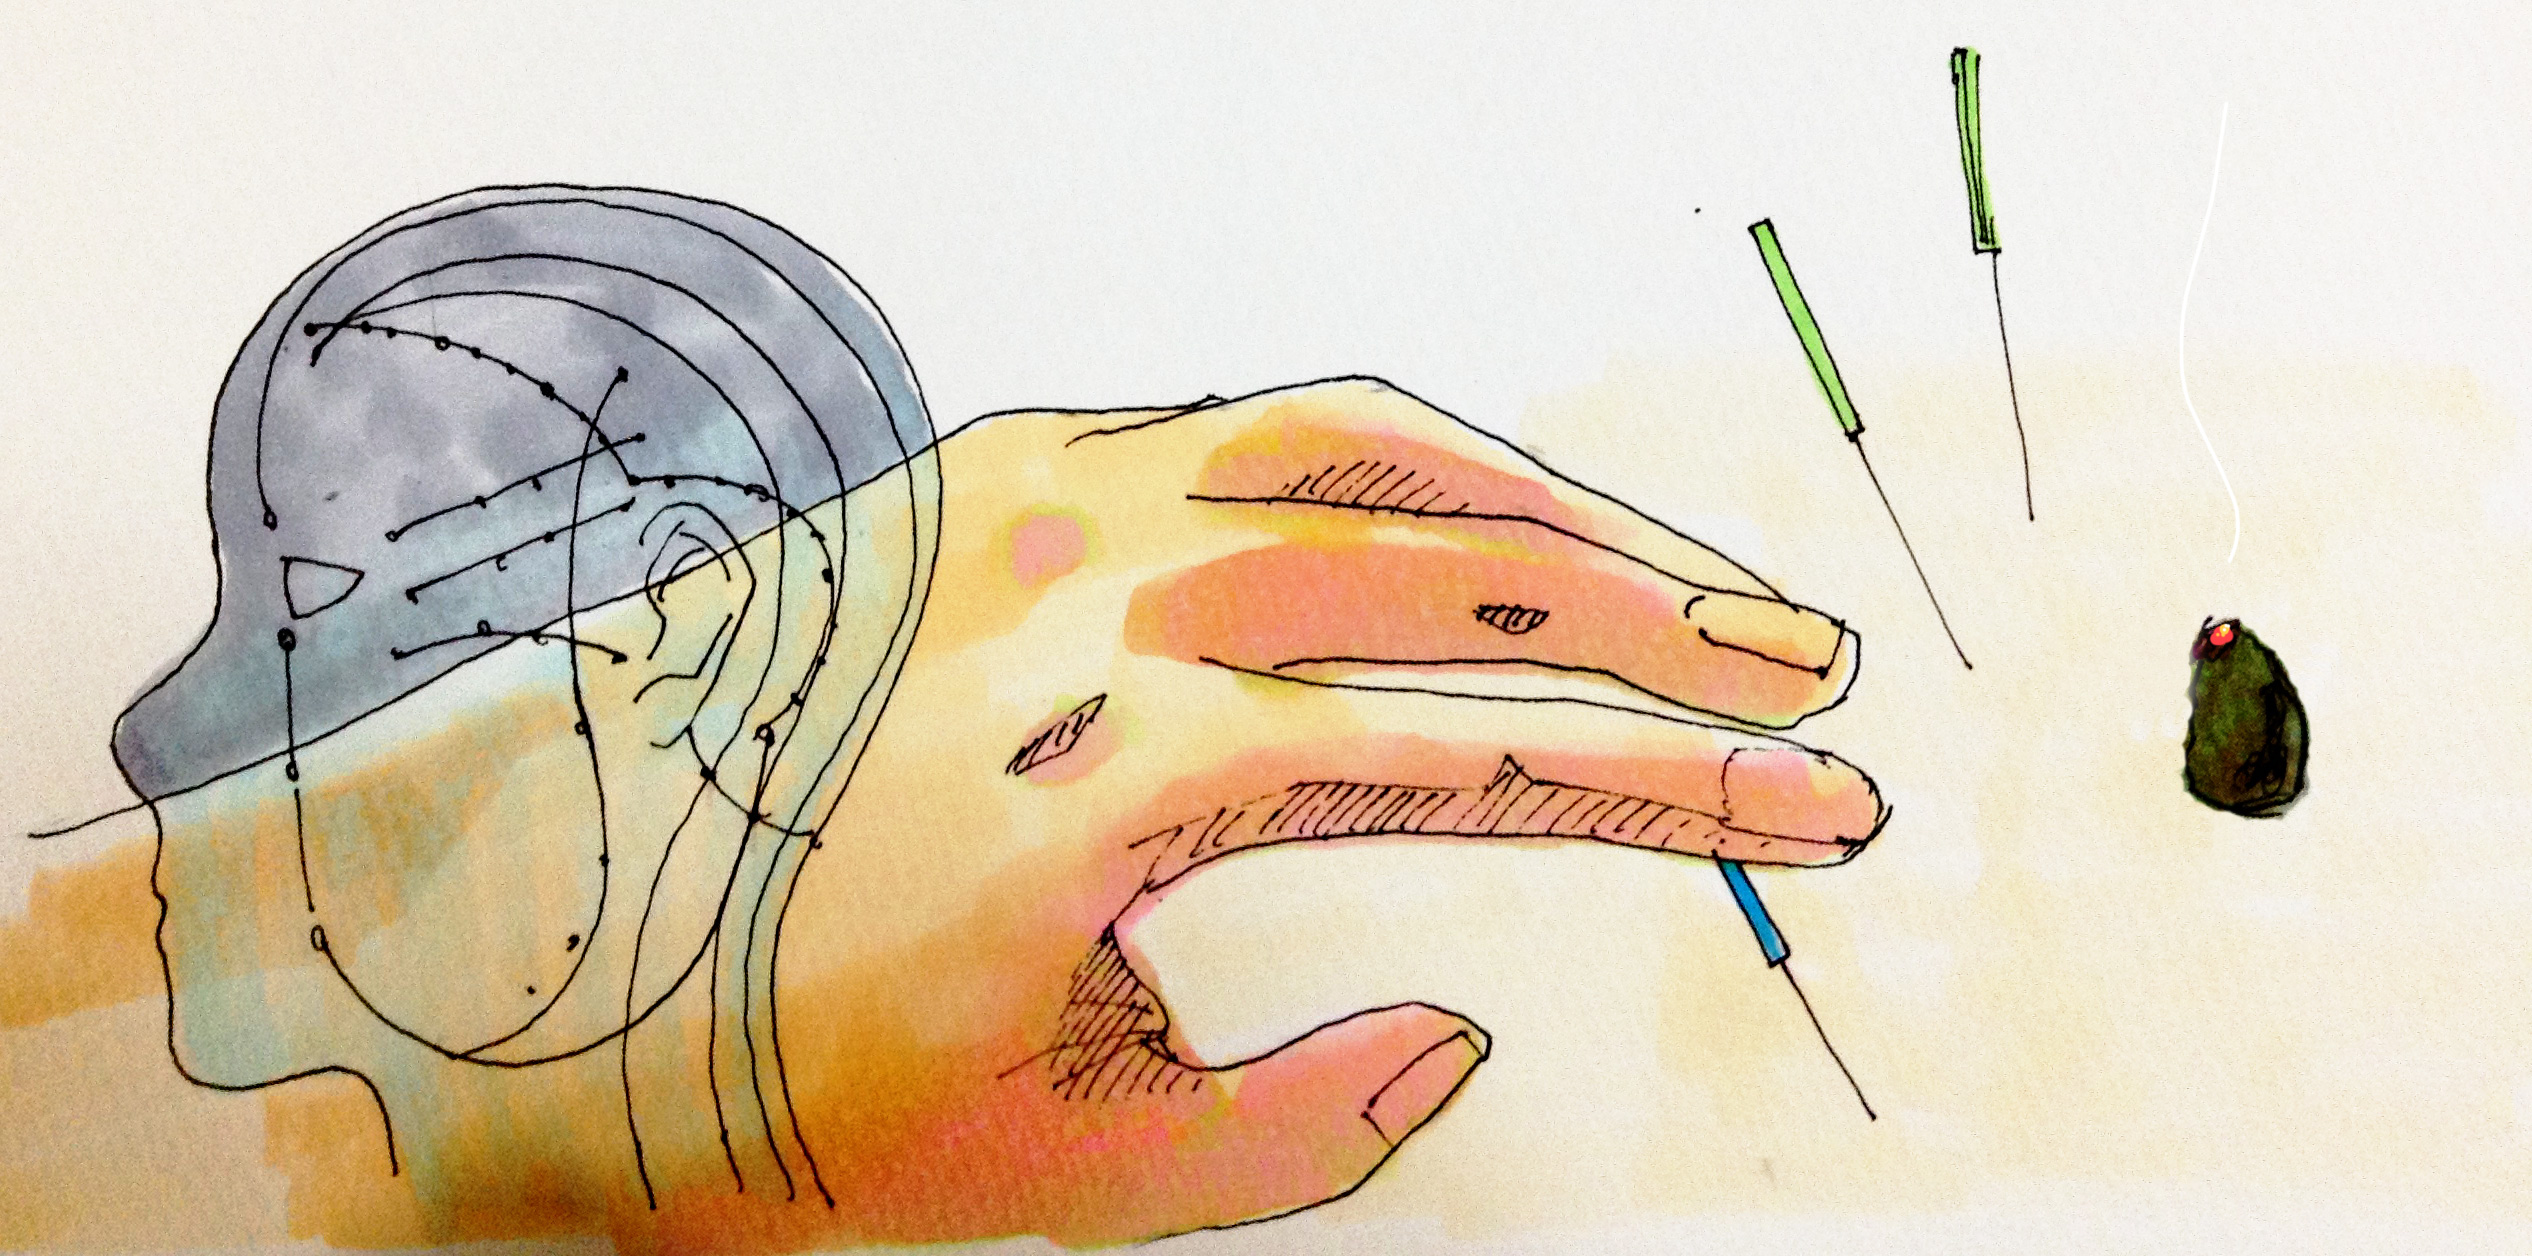 経絡図のイメージと鍼と灸治療のイメージをコピックで描いたイラスト